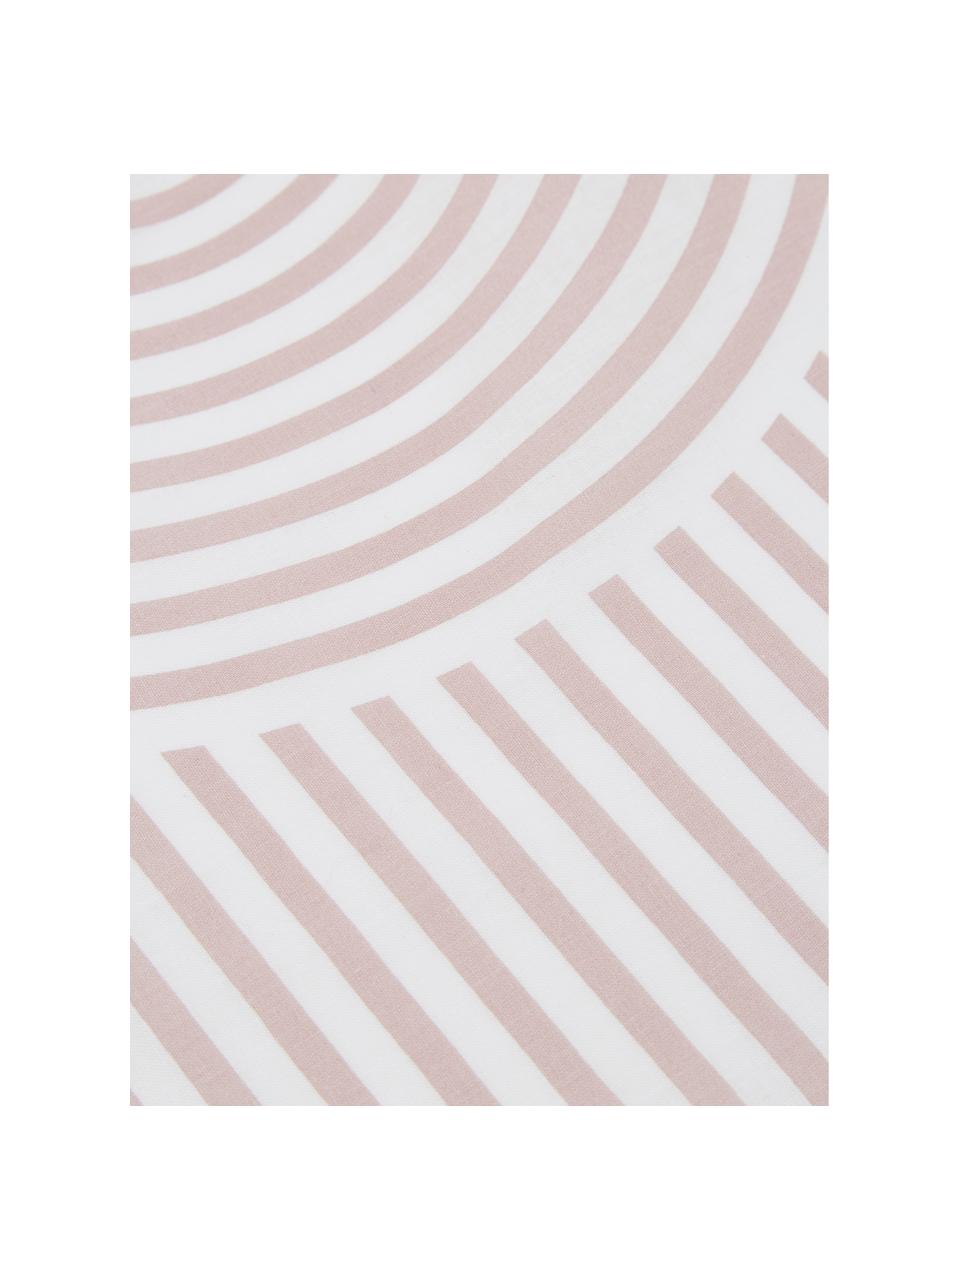 Gemusterte Baumwoll-Bettwäsche Arcs in Altrosa/Weiß, Webart: Renforcé Fadendichte 144 , Rosa,Weiß, 240 x 220 cm + 2 Kissen 80 x 80 cm